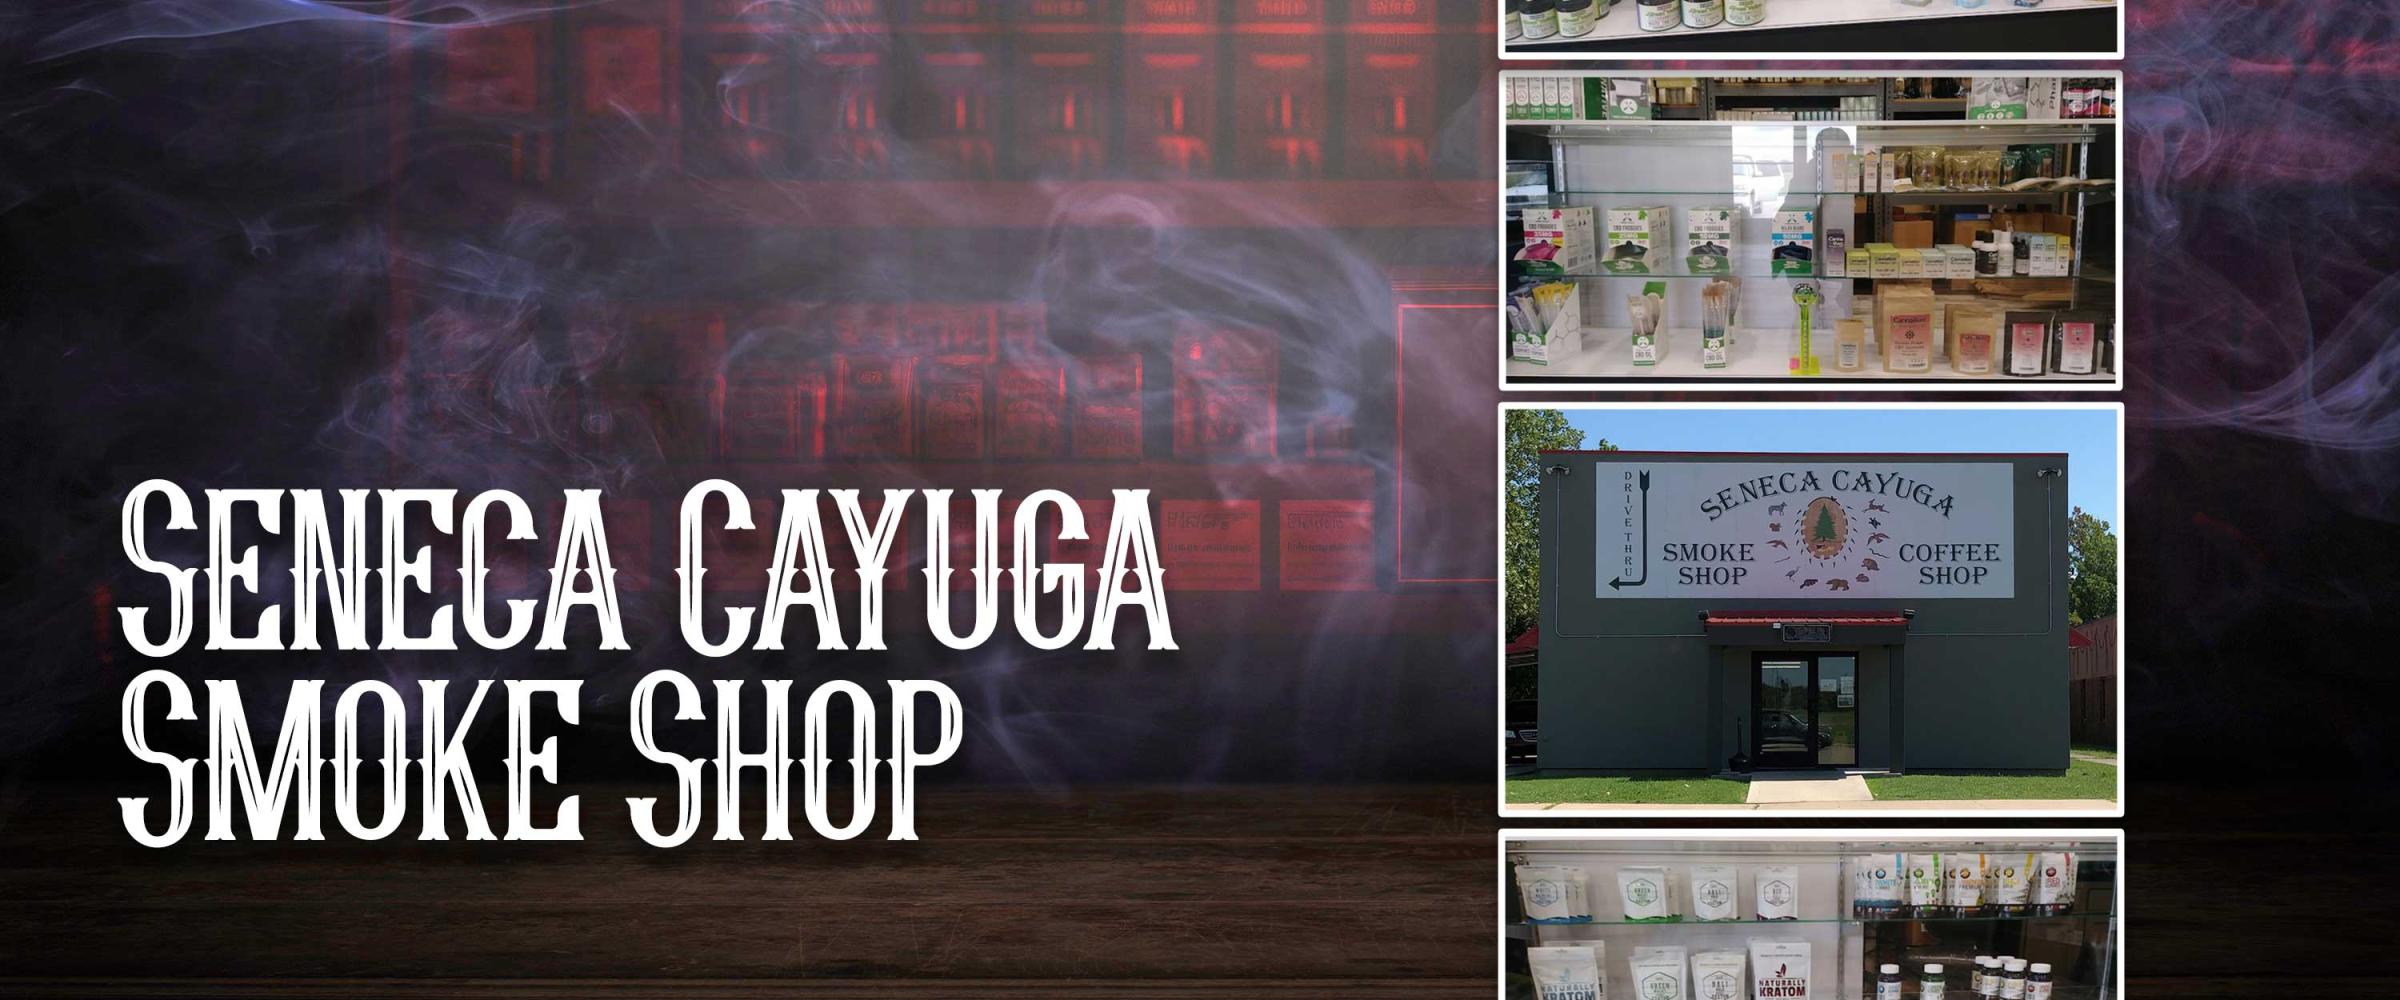 Seneca Cayuga Smoke Shop